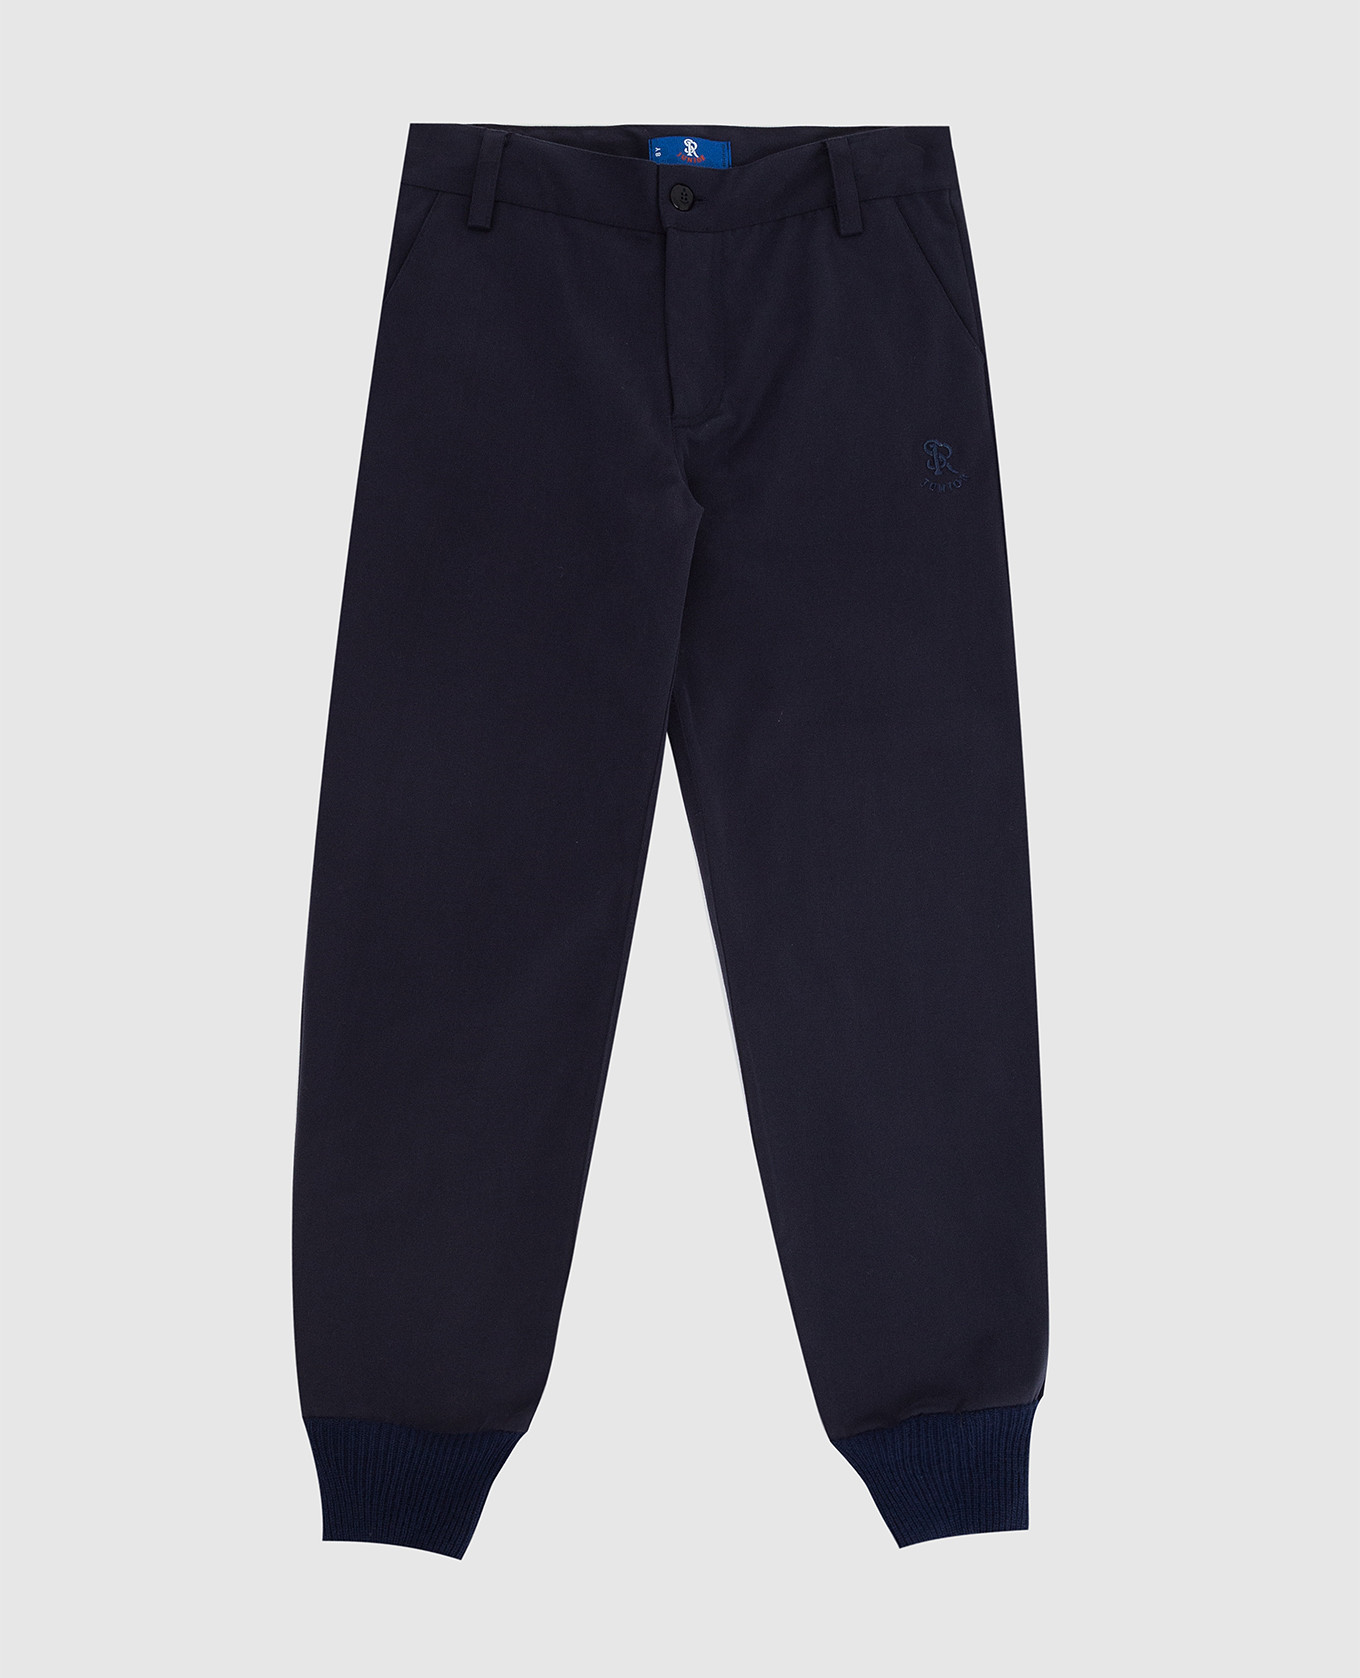 Children's dark blue trousers